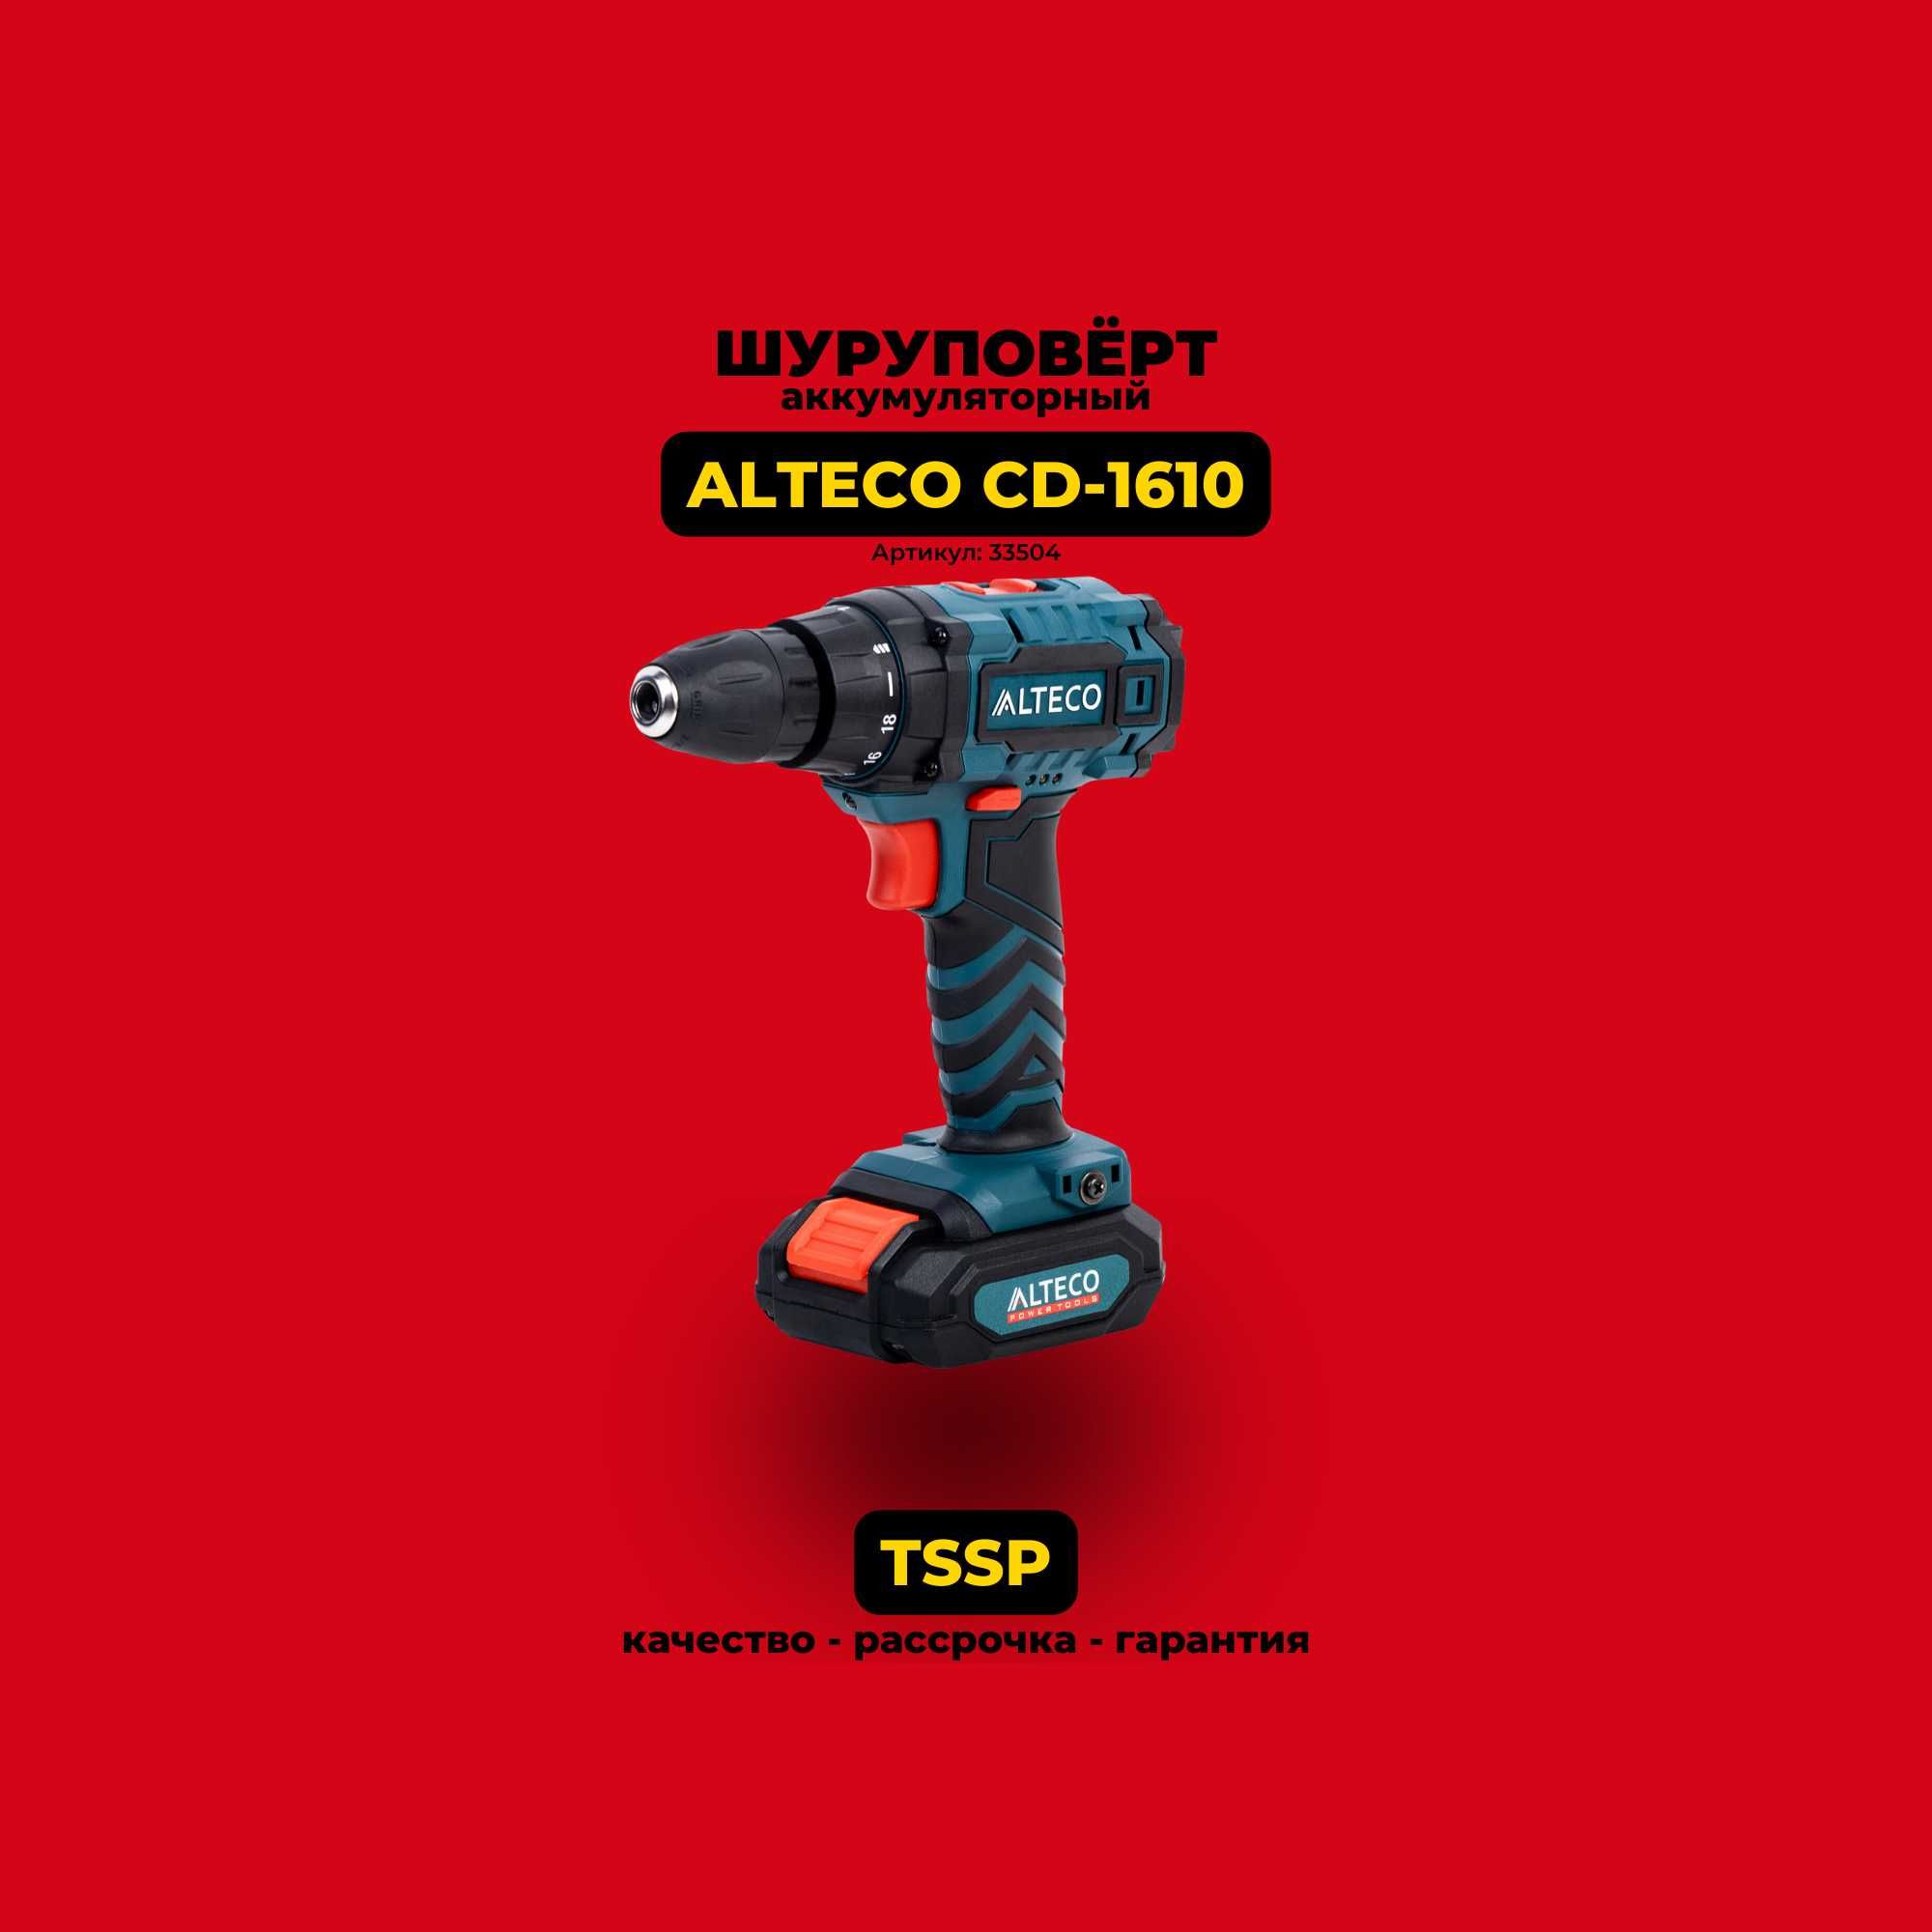 Шуруповёрт аккумуляторный ALTECO CD-1610. Выгодно купить у нас!